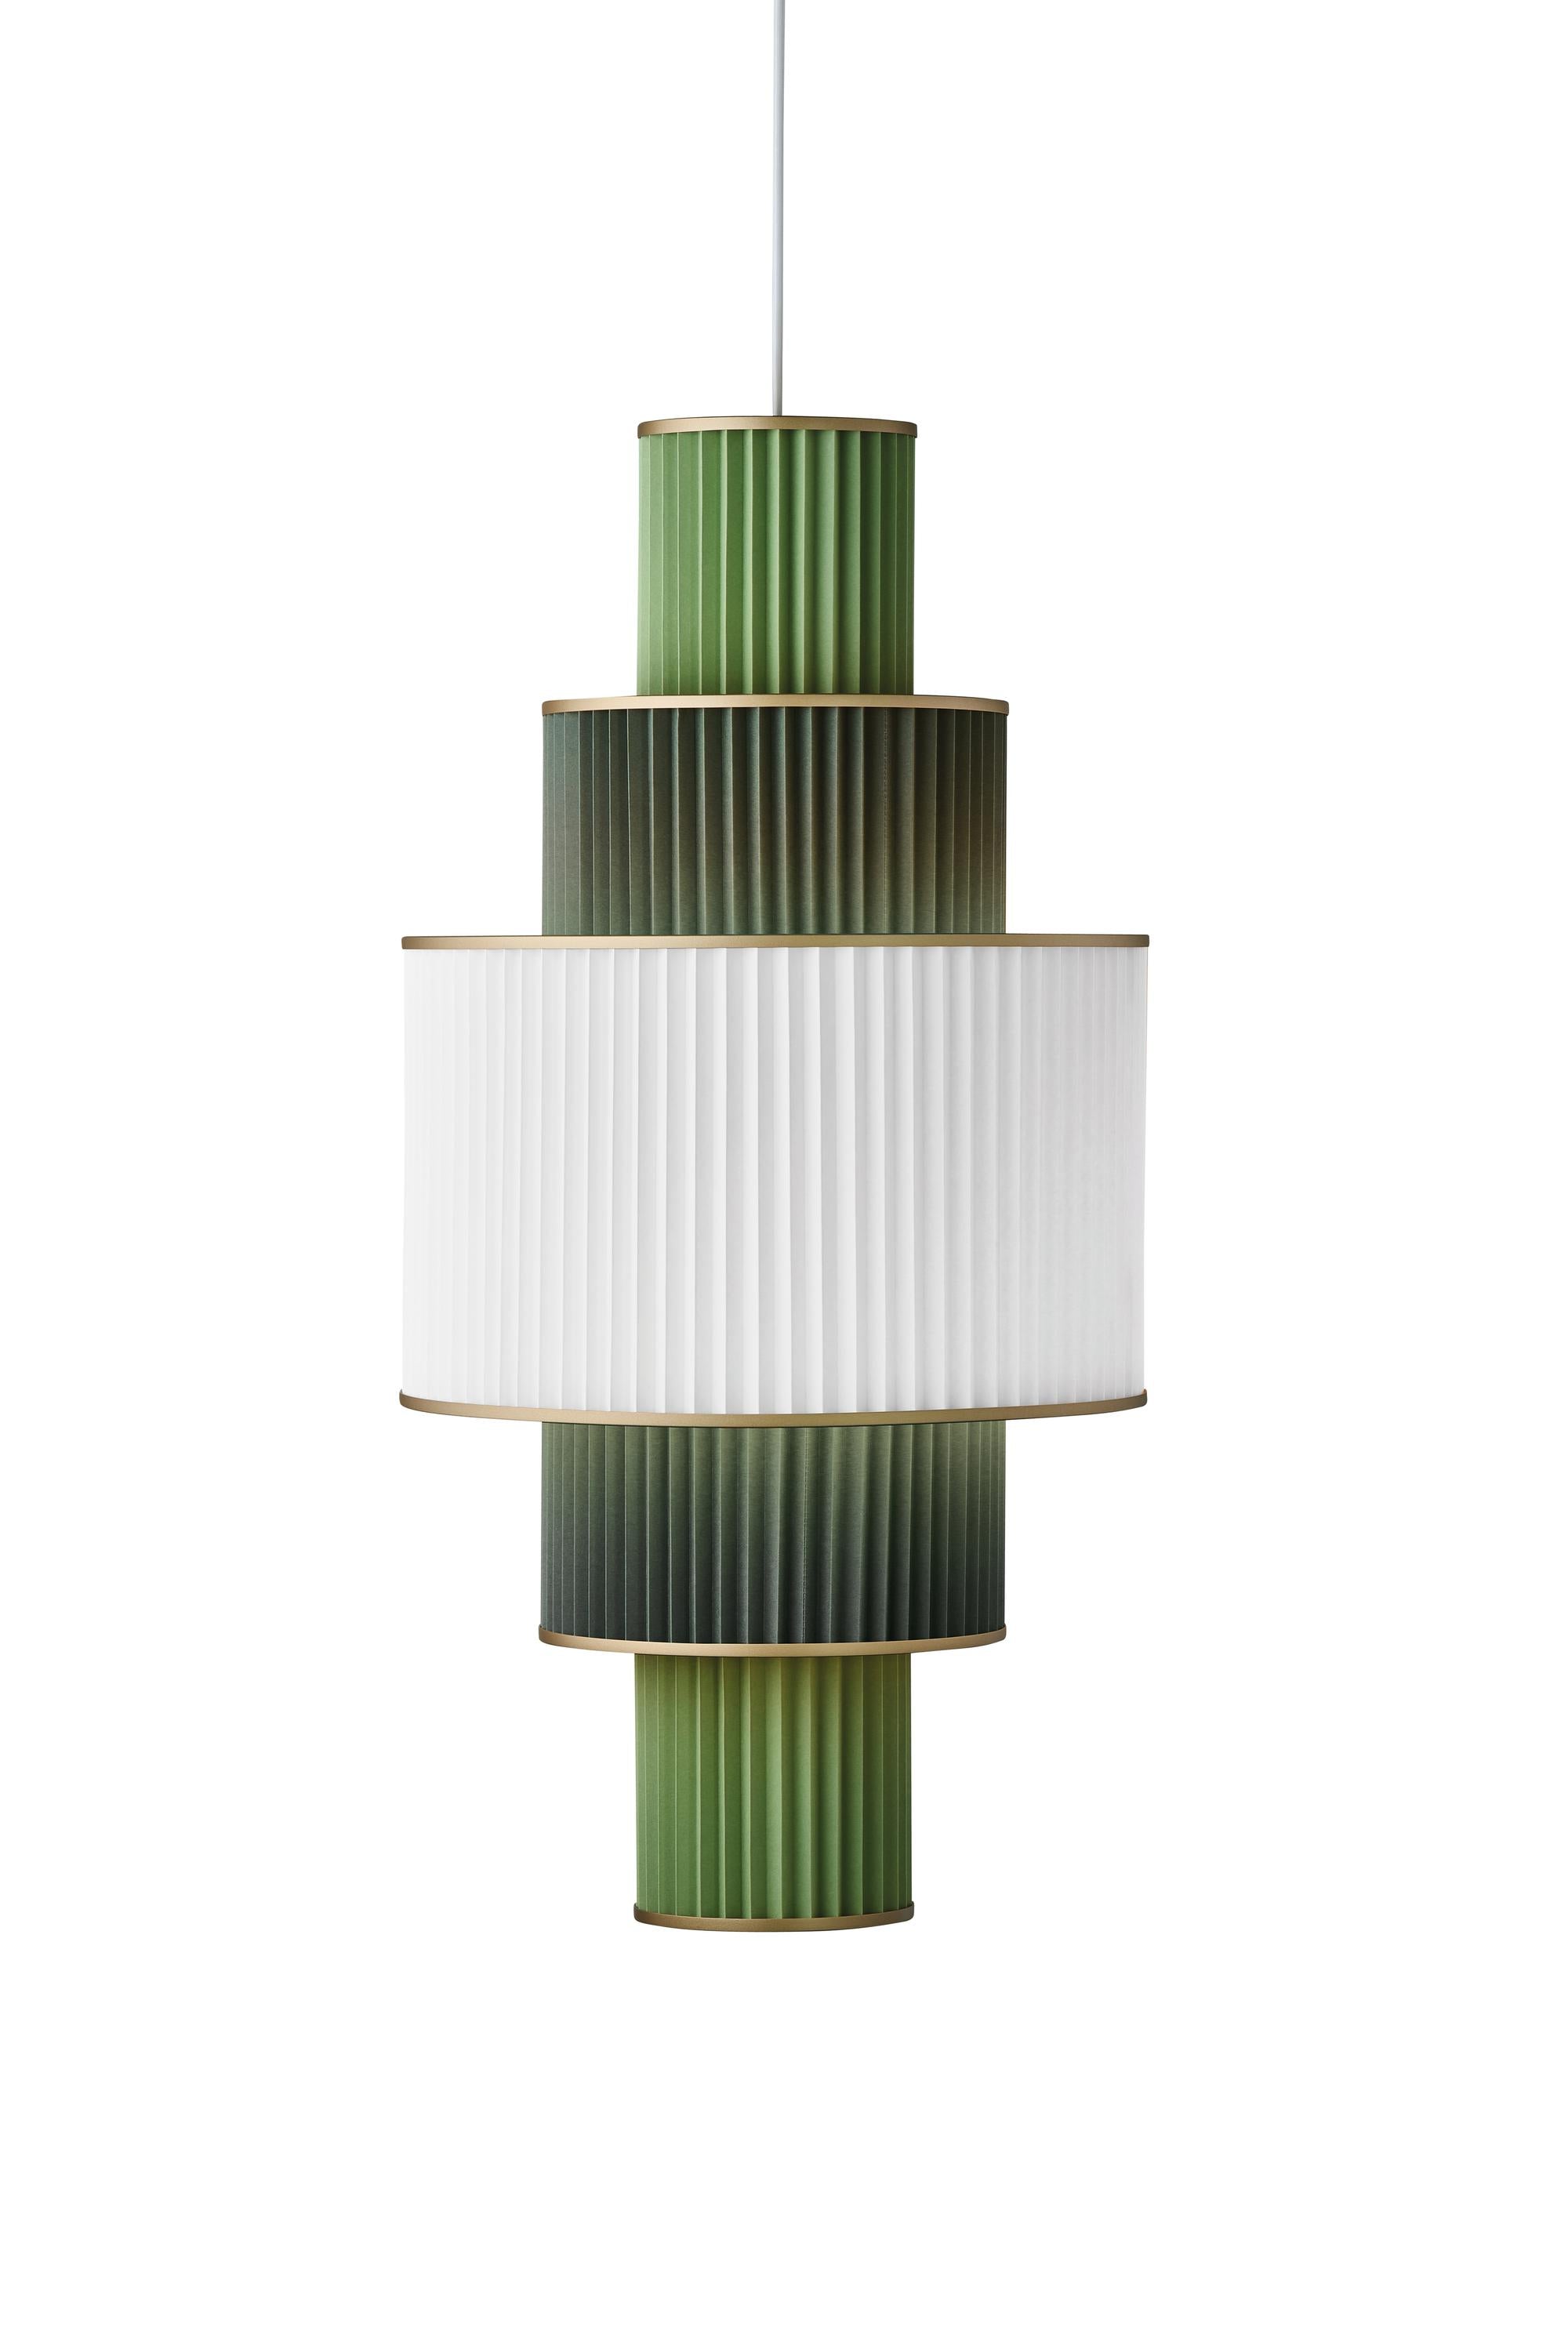 Le Klint Plivello Suspension Lamp Golden/White/Light Green med 5 nyanser (S M L M S)